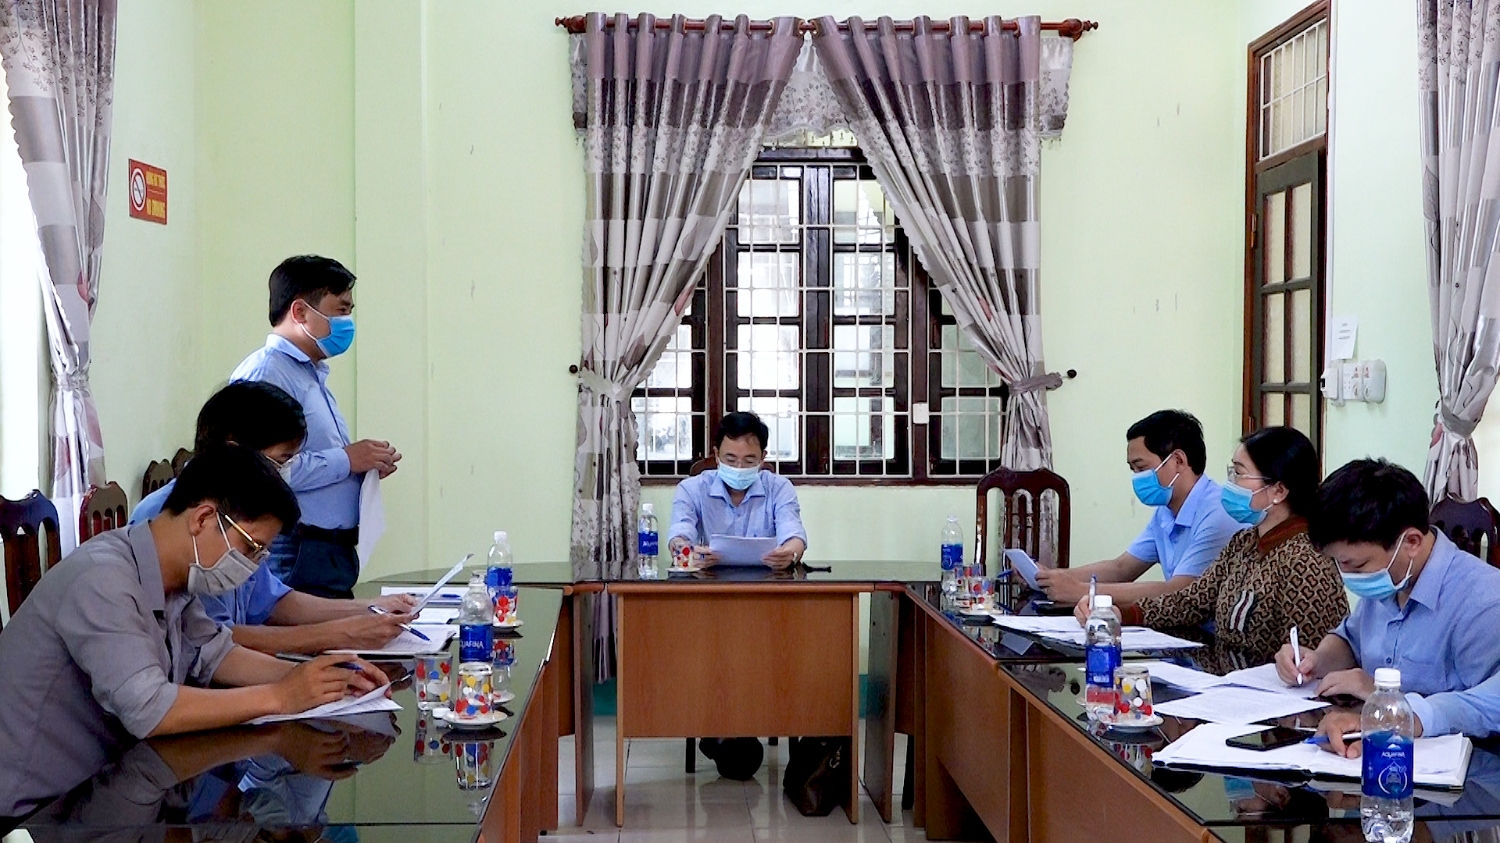 Đoàn kiểm tra Sở GDĐT tỉnh kiểm tra công tác chuẩn bị trước kỳ thi của các hội đồng coi thi tại trường THPT Lương Thế Vinh.